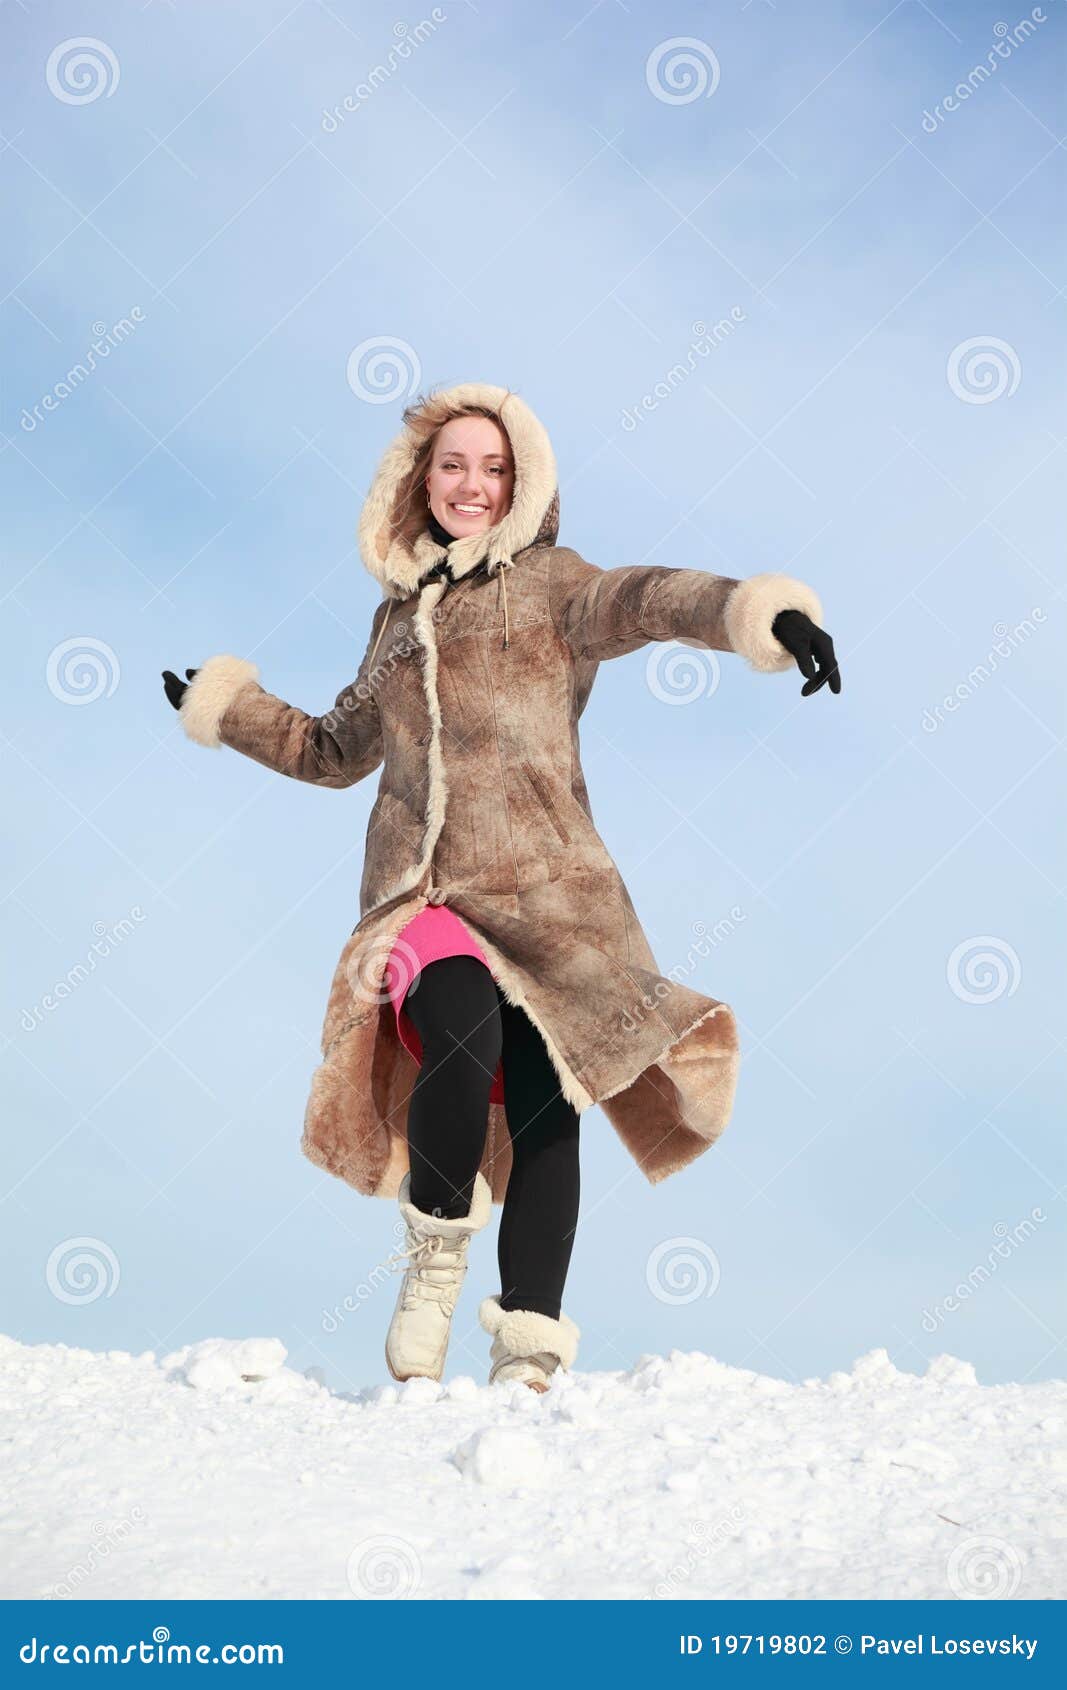 La ragazza affretta in avanti su neve ed oscilla le braccia. La ragazza affretta in avanti su neve in inverno ed oscilla le braccia